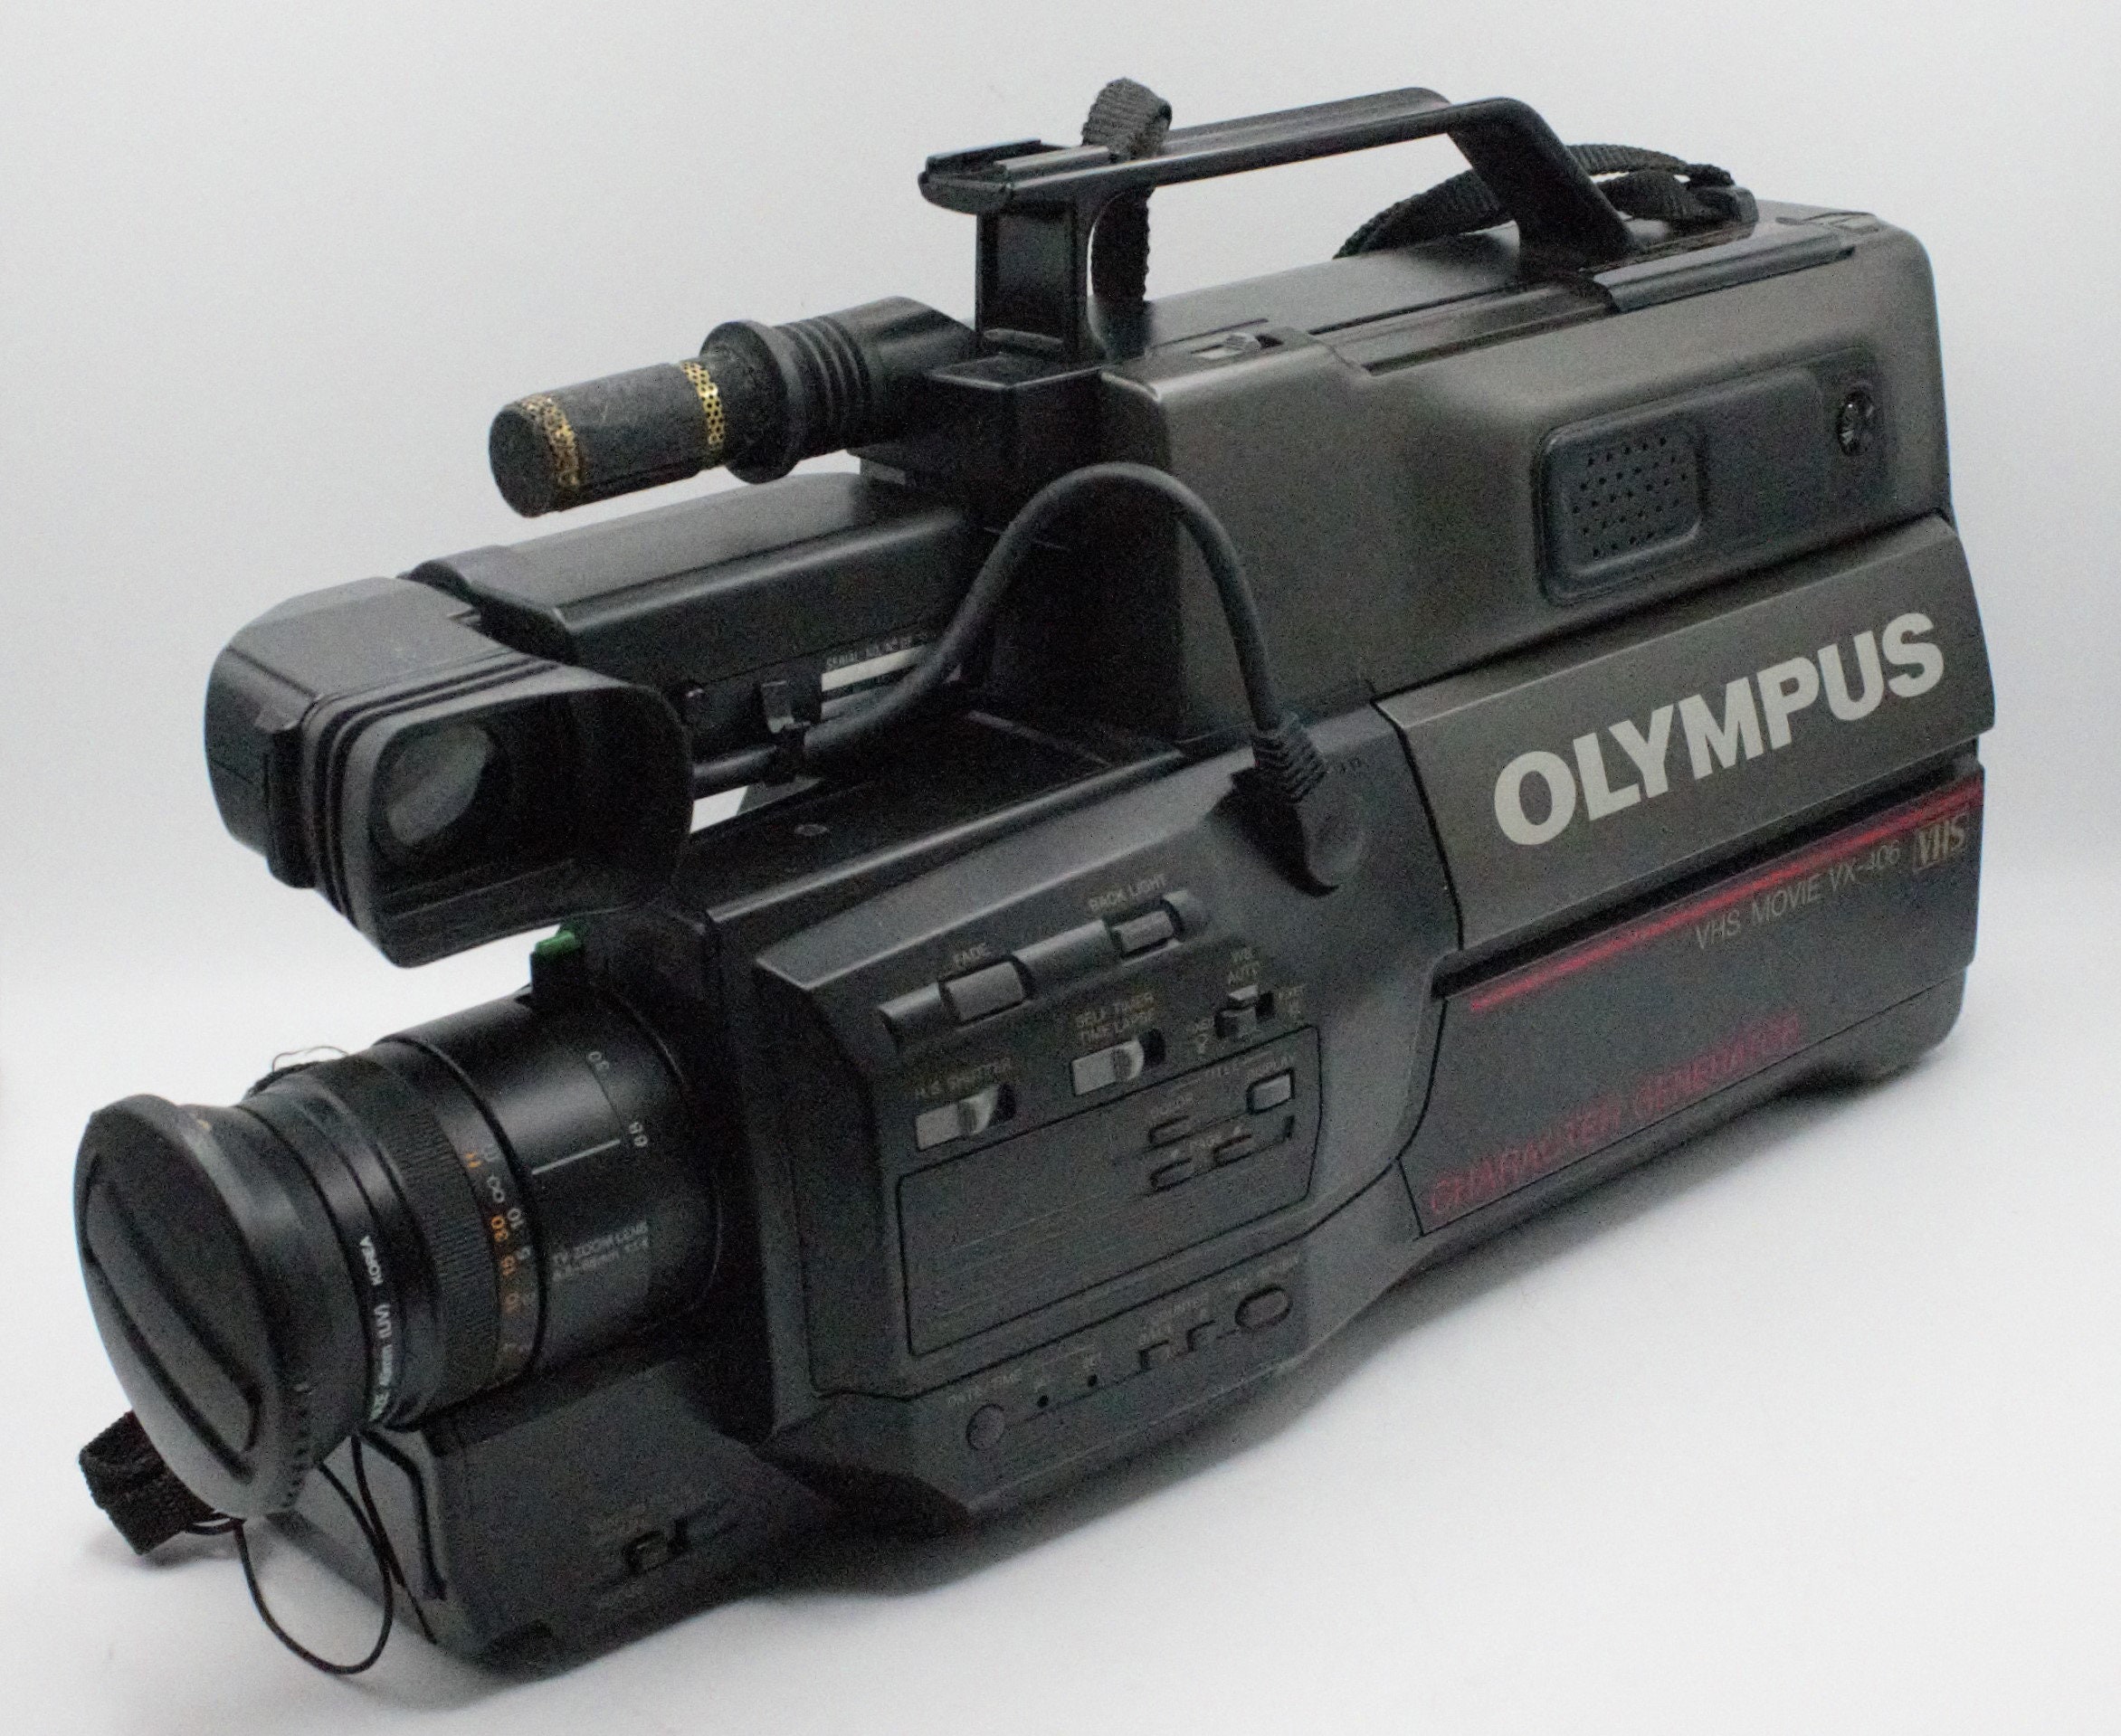 VHS Camcorder Compact Retro Vintage Video Camera 